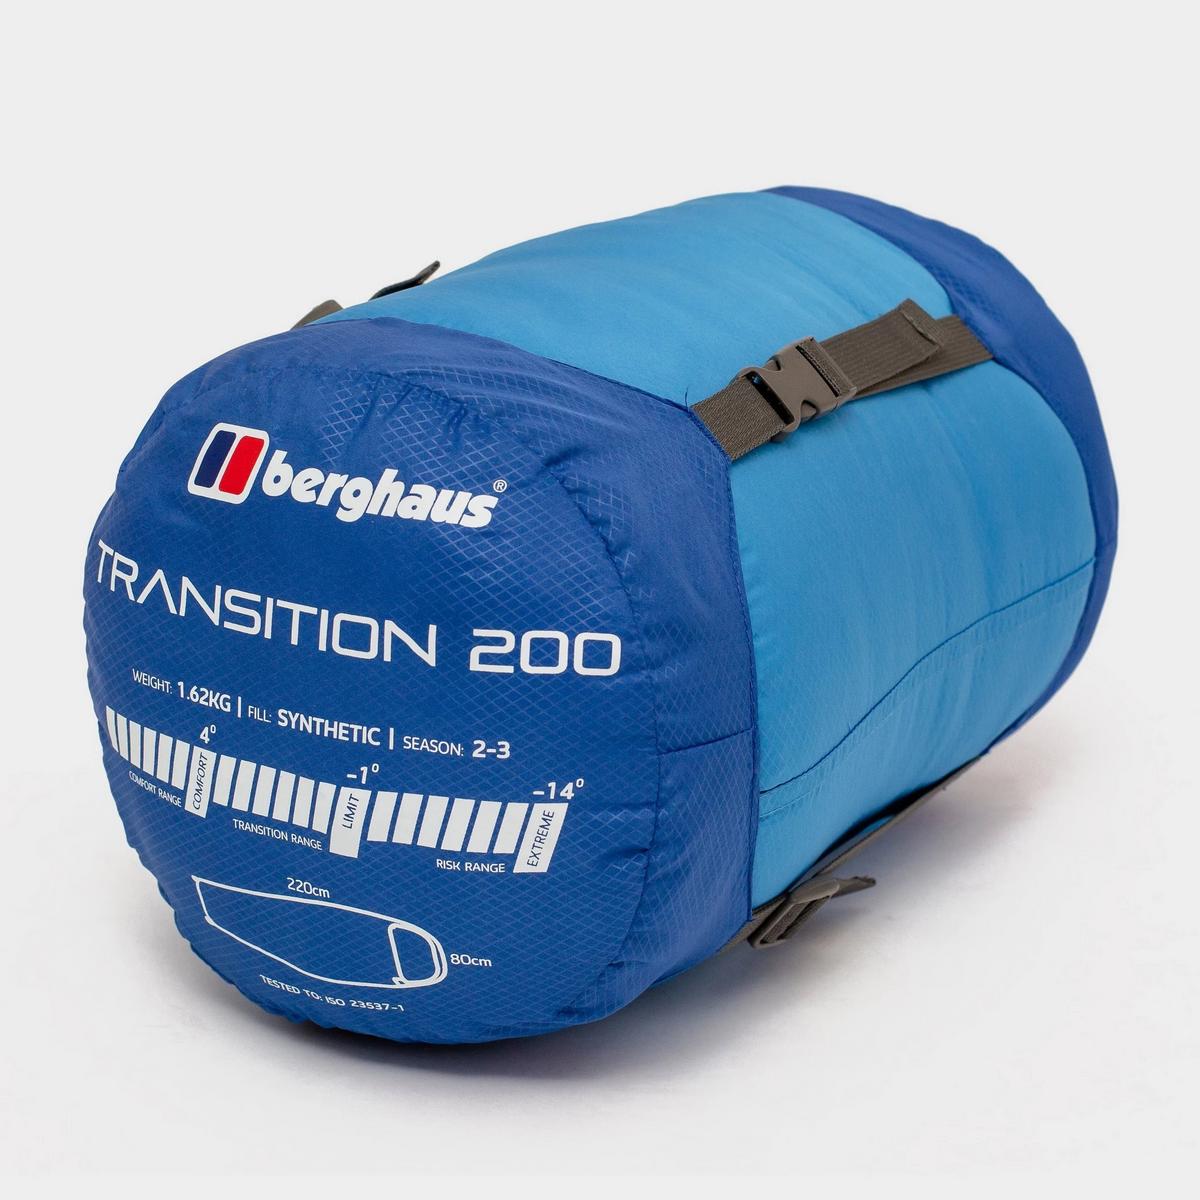 Berghaus Transition 200 Sleeping Bag - Blue